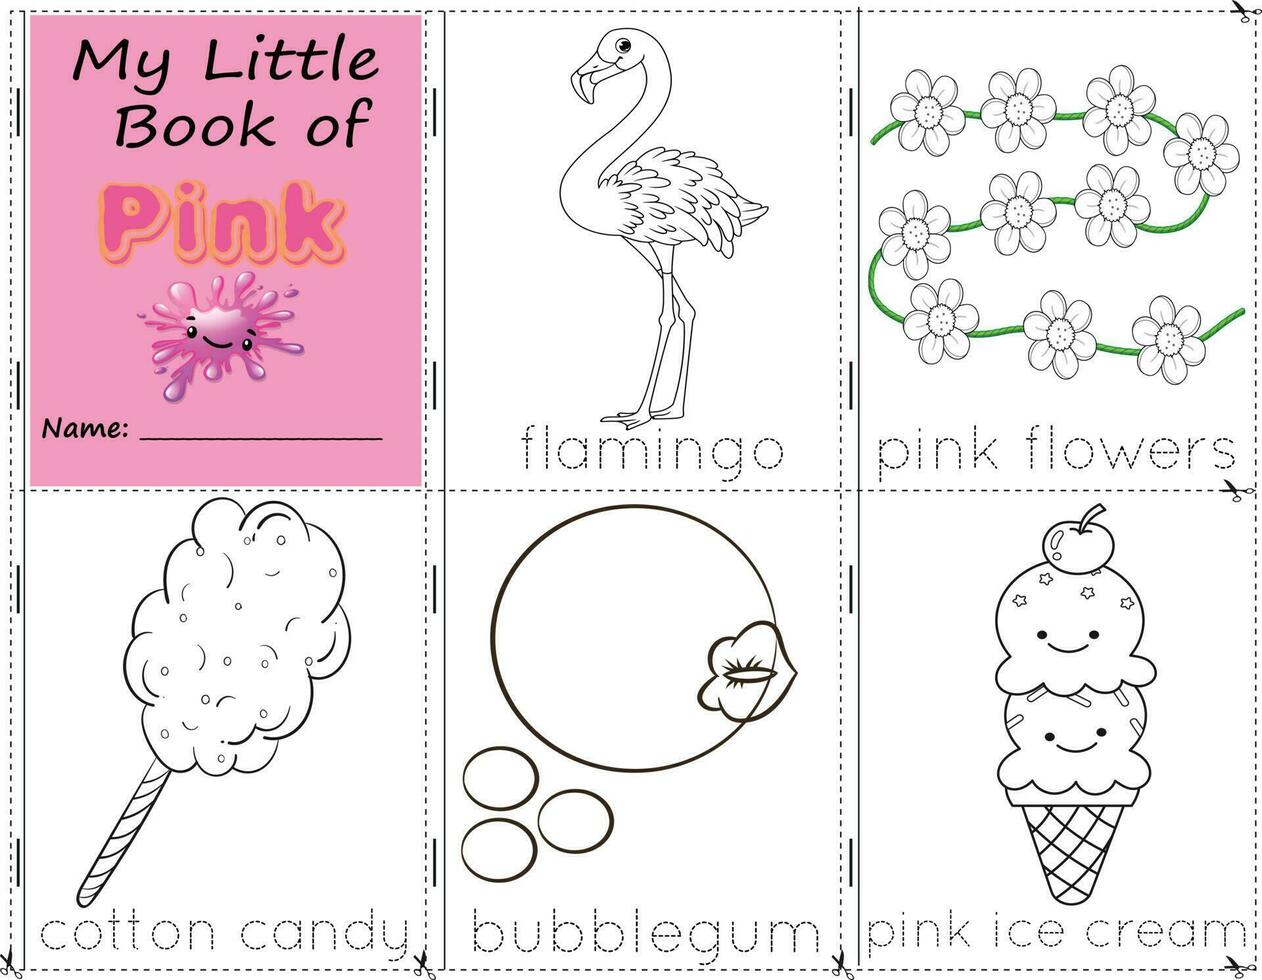 mio poco libro di rosa colore oggetti rosa per dipingere loro come essi siamo nel vero vita. formazione scolastica attività foglio di lavoro per bambini. fenicottero, rosa fiori, cotone caramella, gomma da masticare, e rosa ghiaccio crema vettore